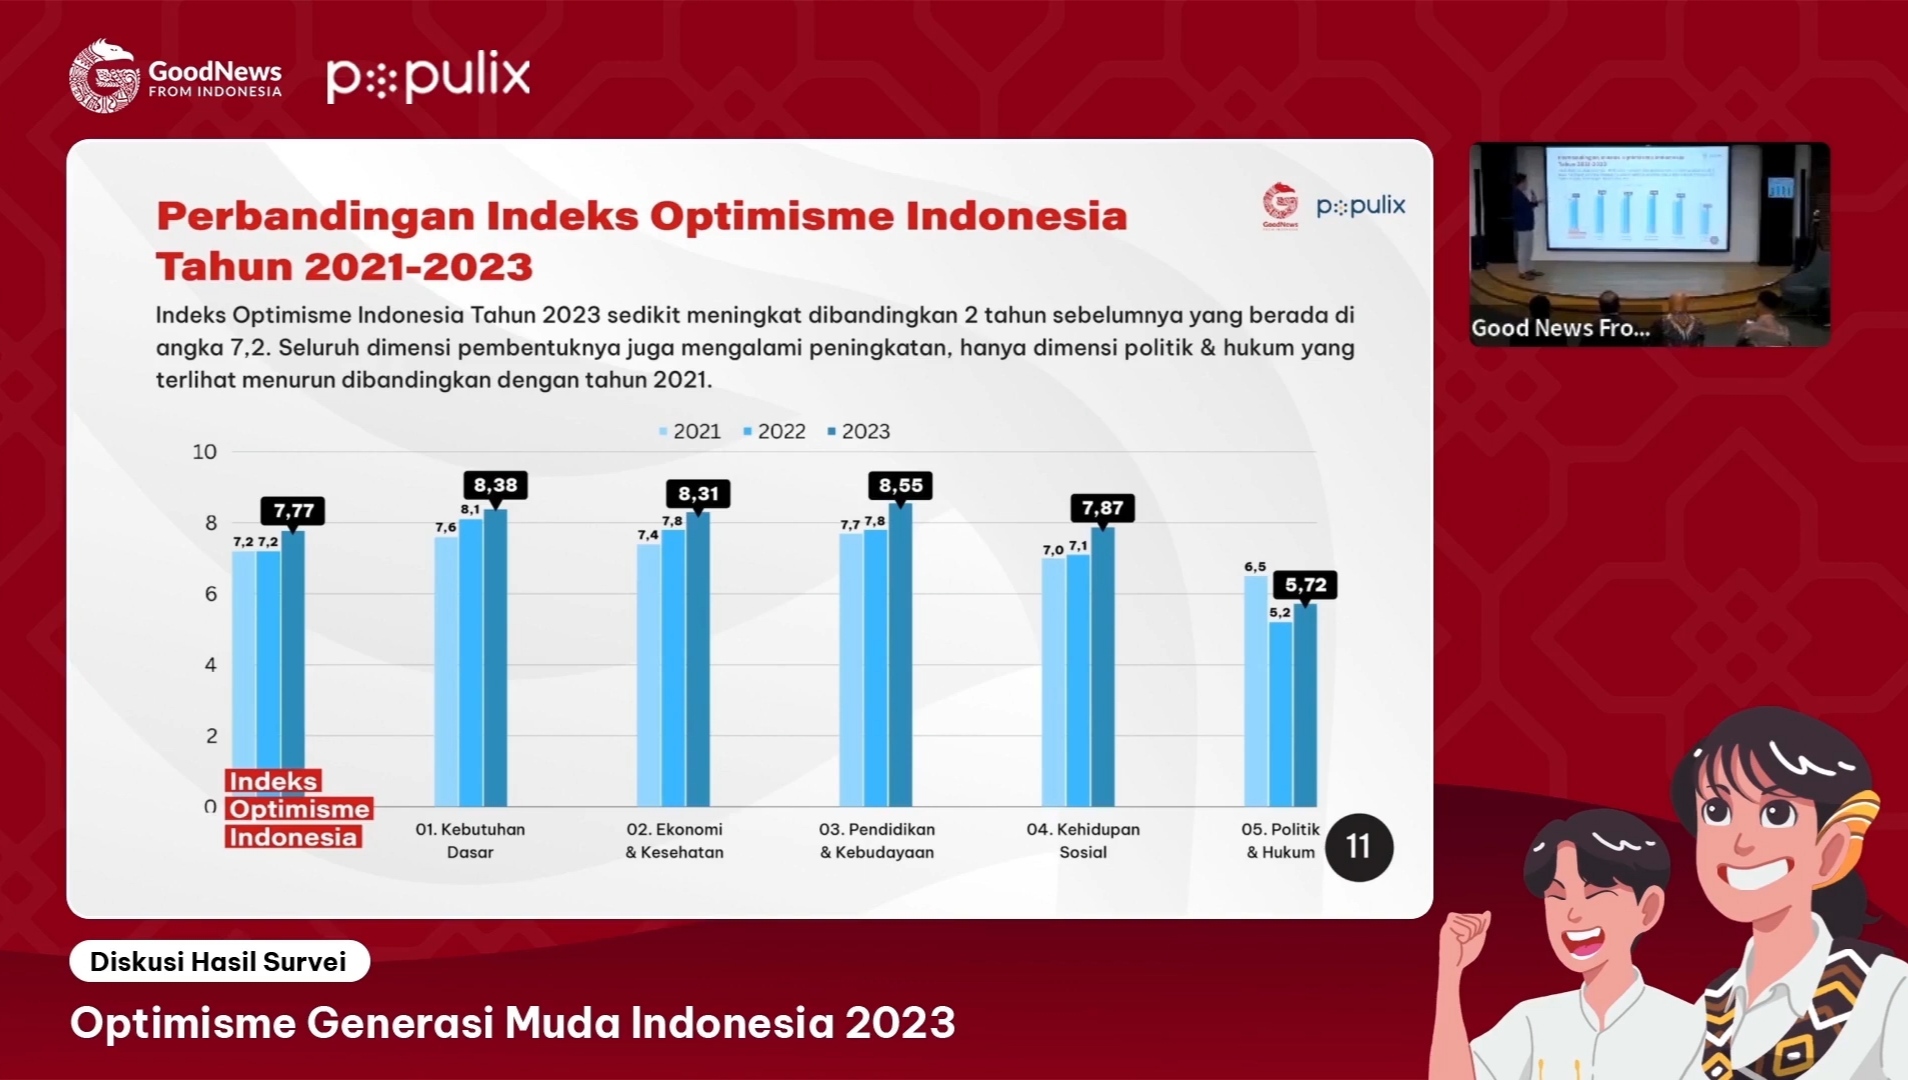 YouTube GNFI Survei Optimisme Generasi Muda Indonesia 2023